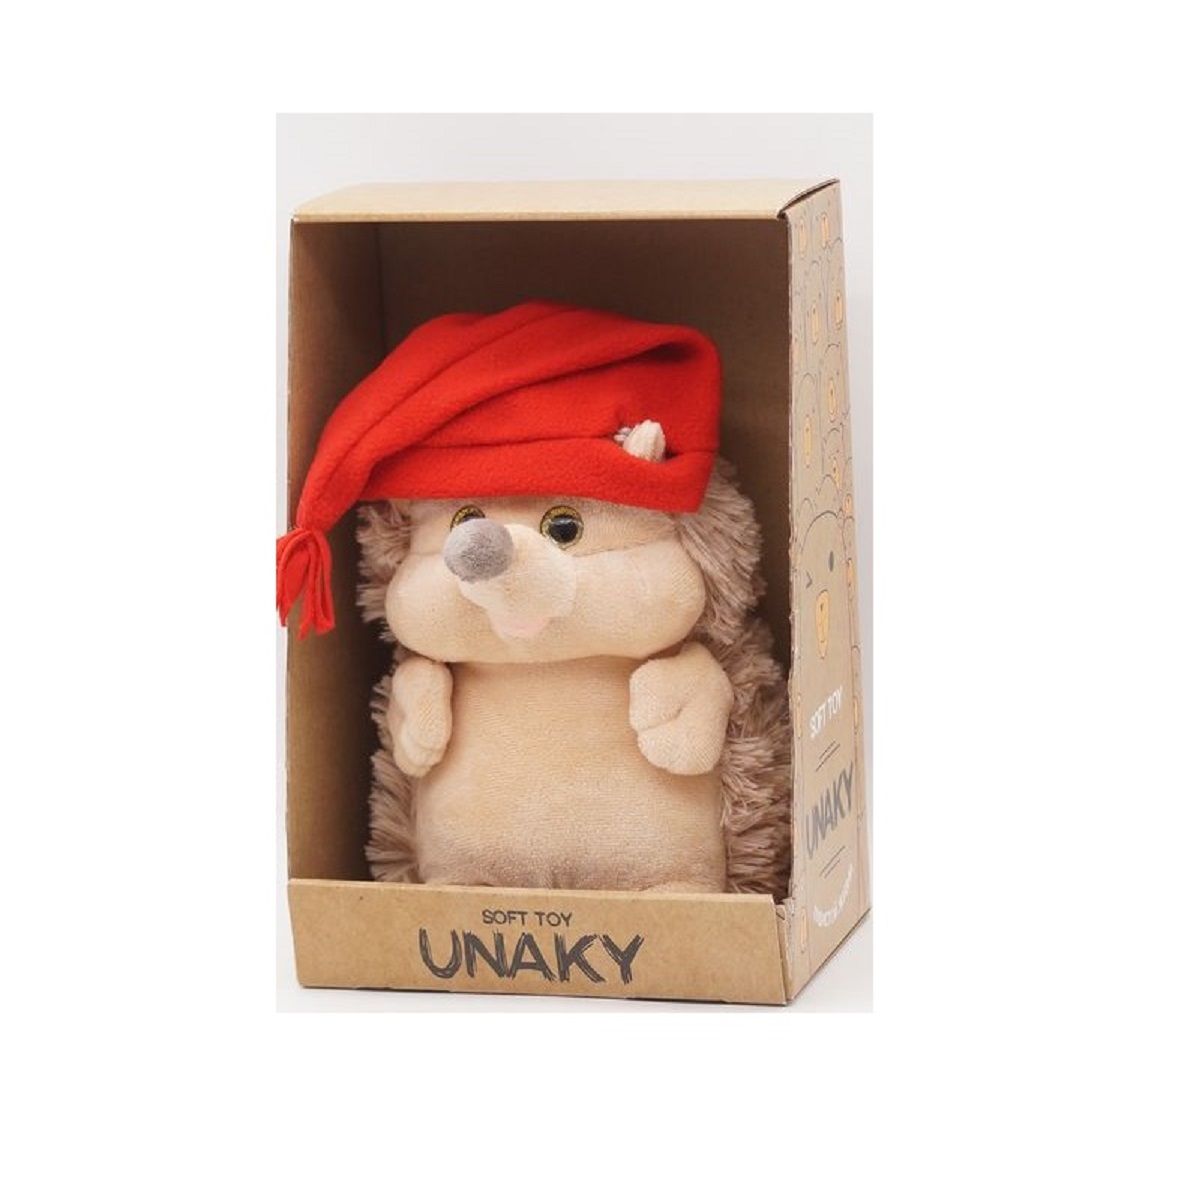 Мягкая игрушка Unaky Soft Toy Ежик Златон 22 см 0913222-28M красный; бежевый; белый мягкая игрушка unaky soft toy ежик златон 22 см